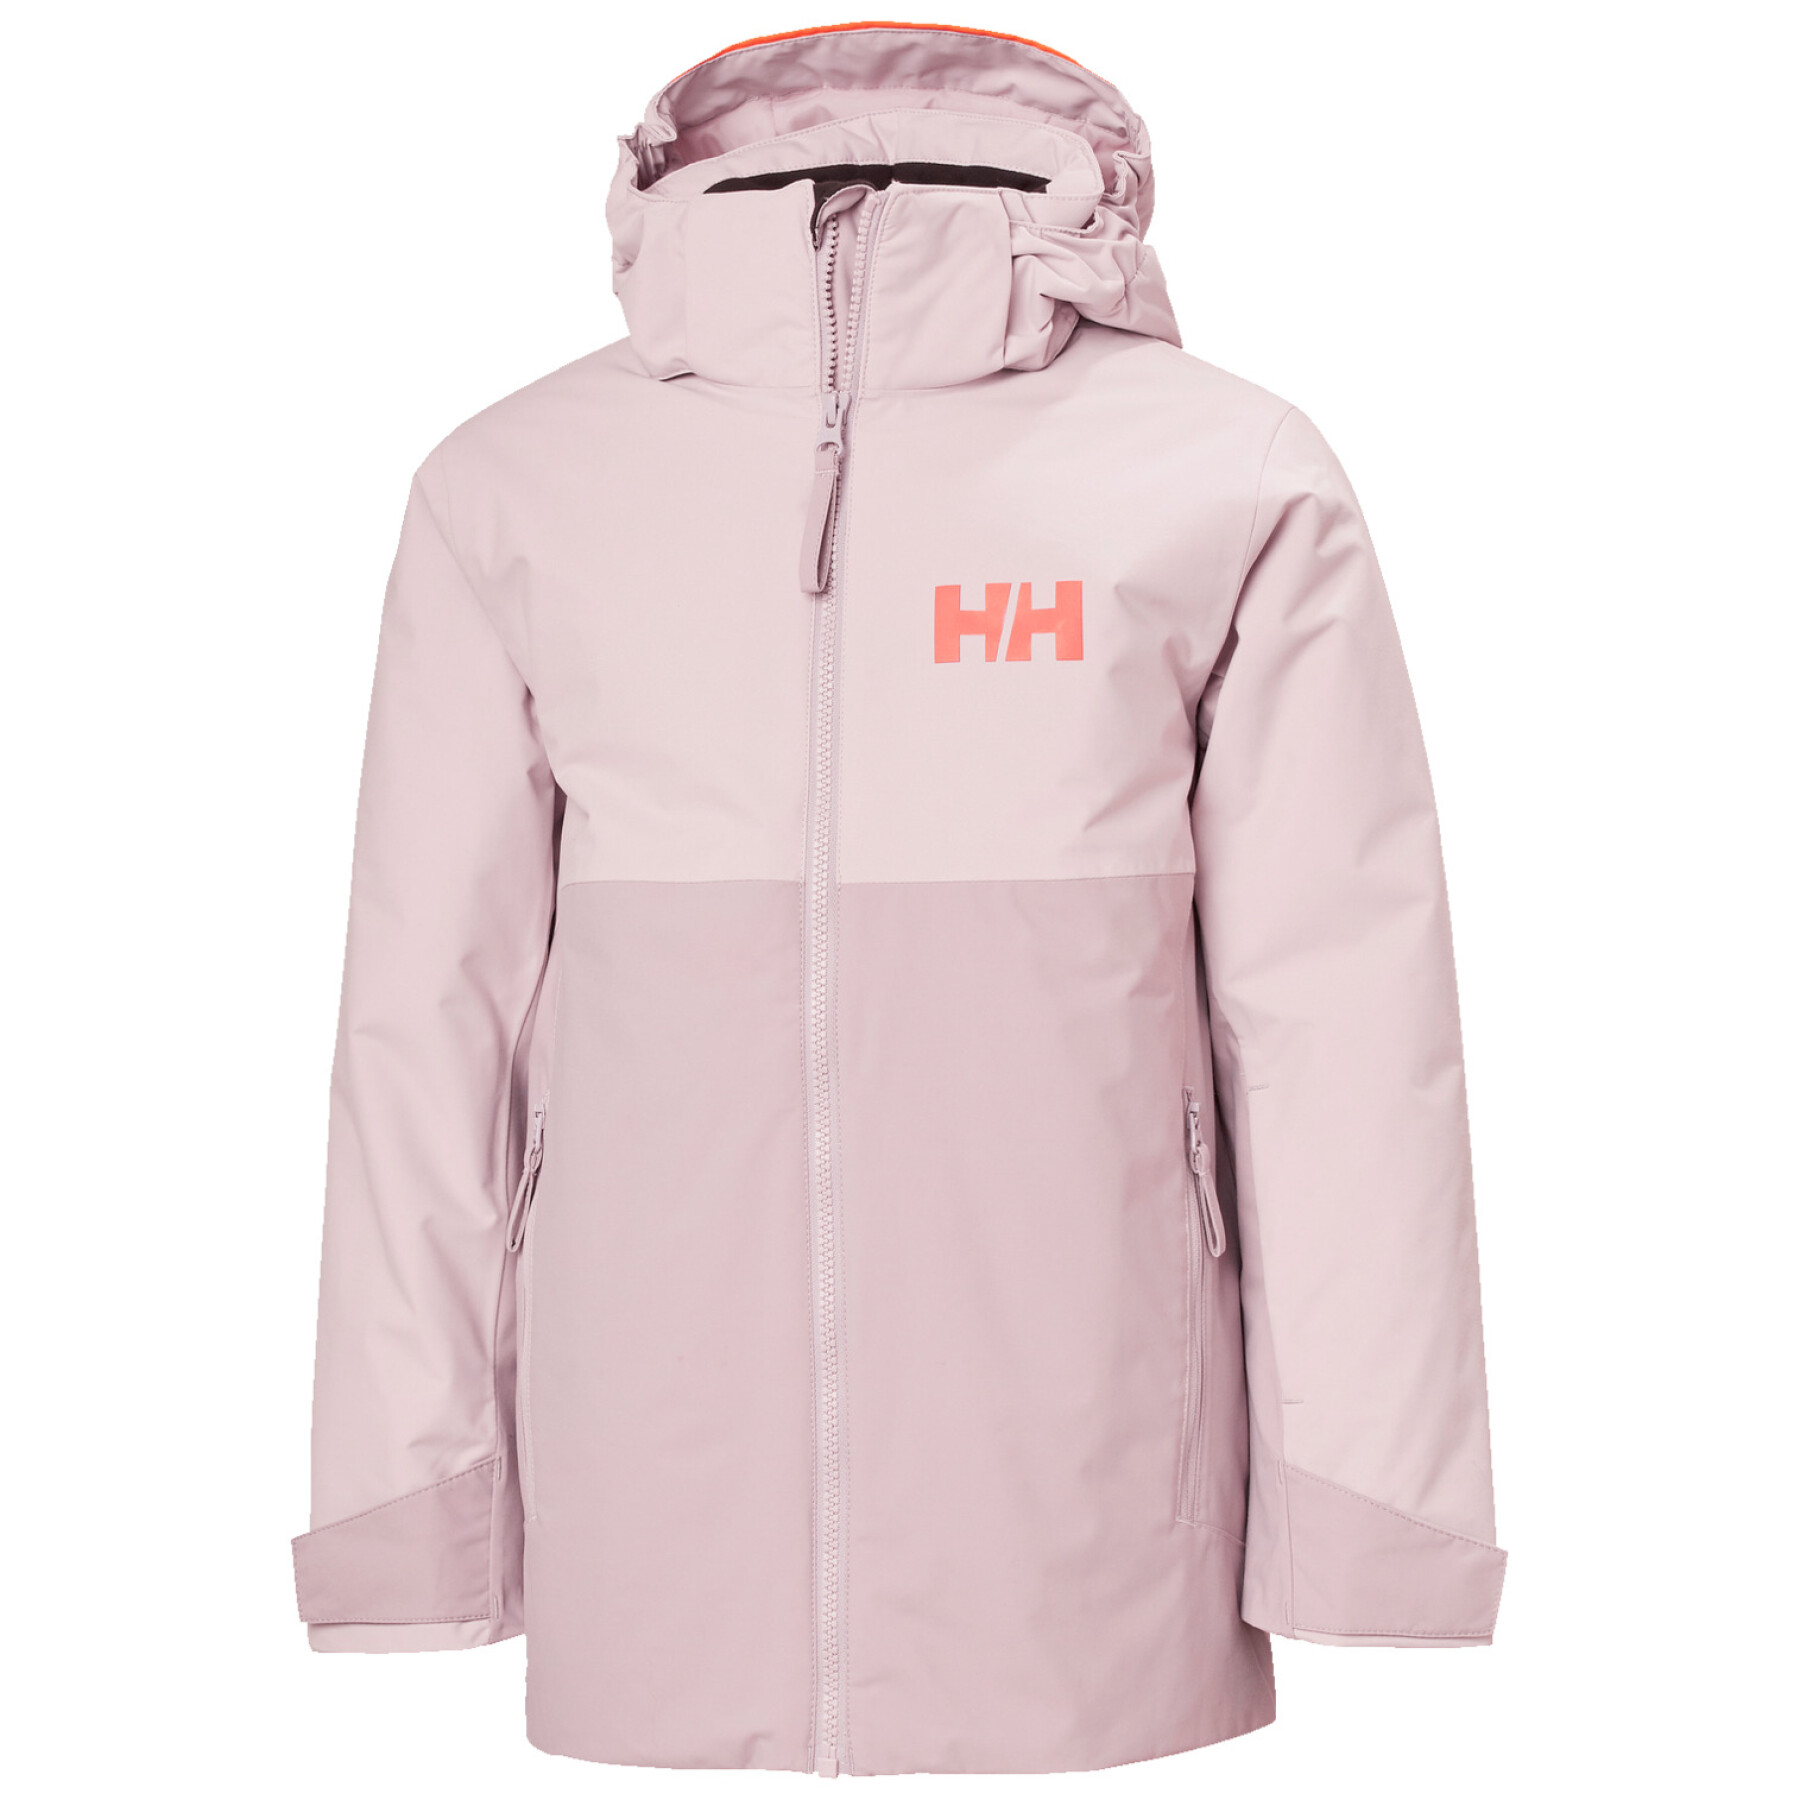 Waterproof ski jacket for children Helly Hansen